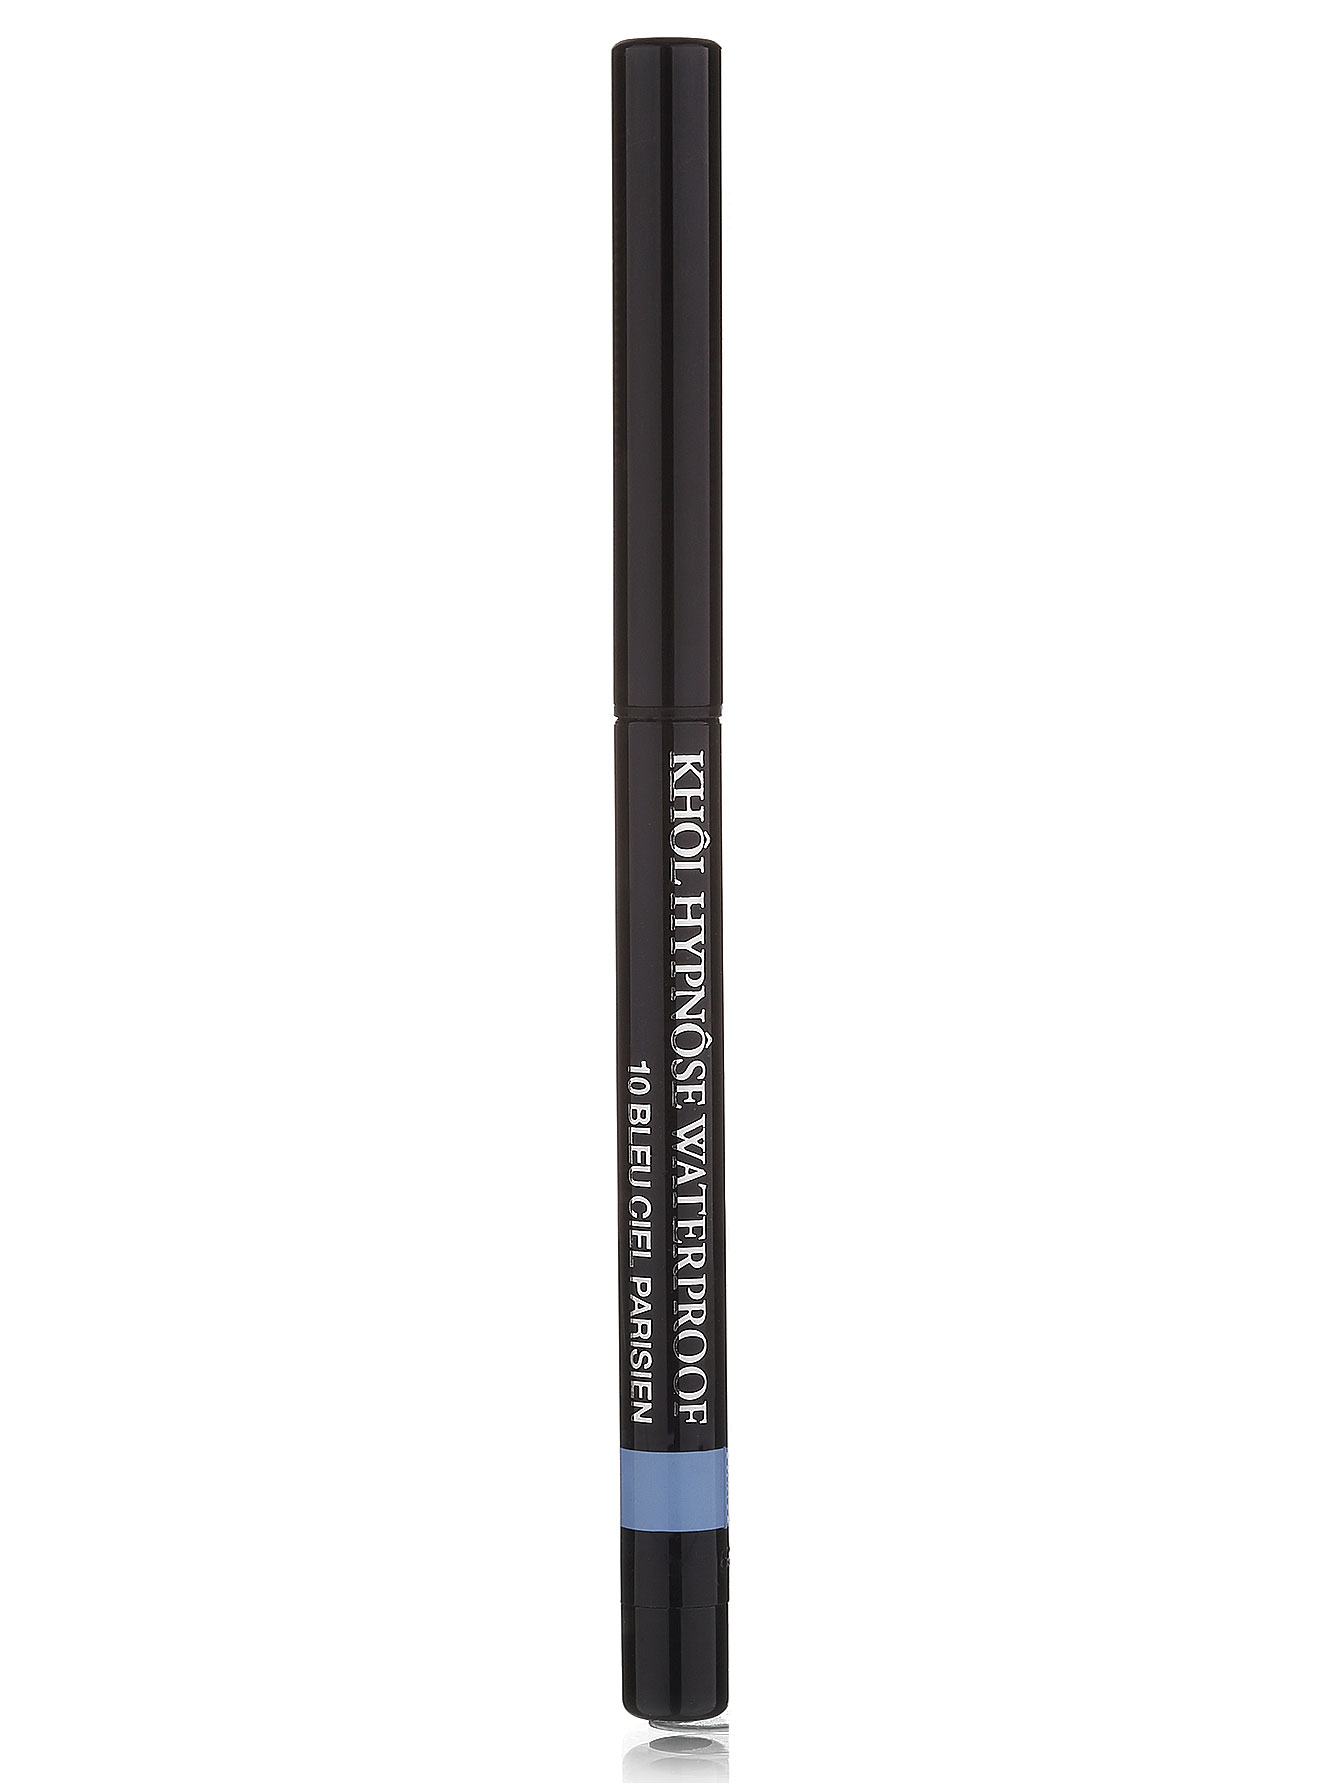  Карандаш для глаз - WP 10, Crayon Khol - Модель Верх-Низ